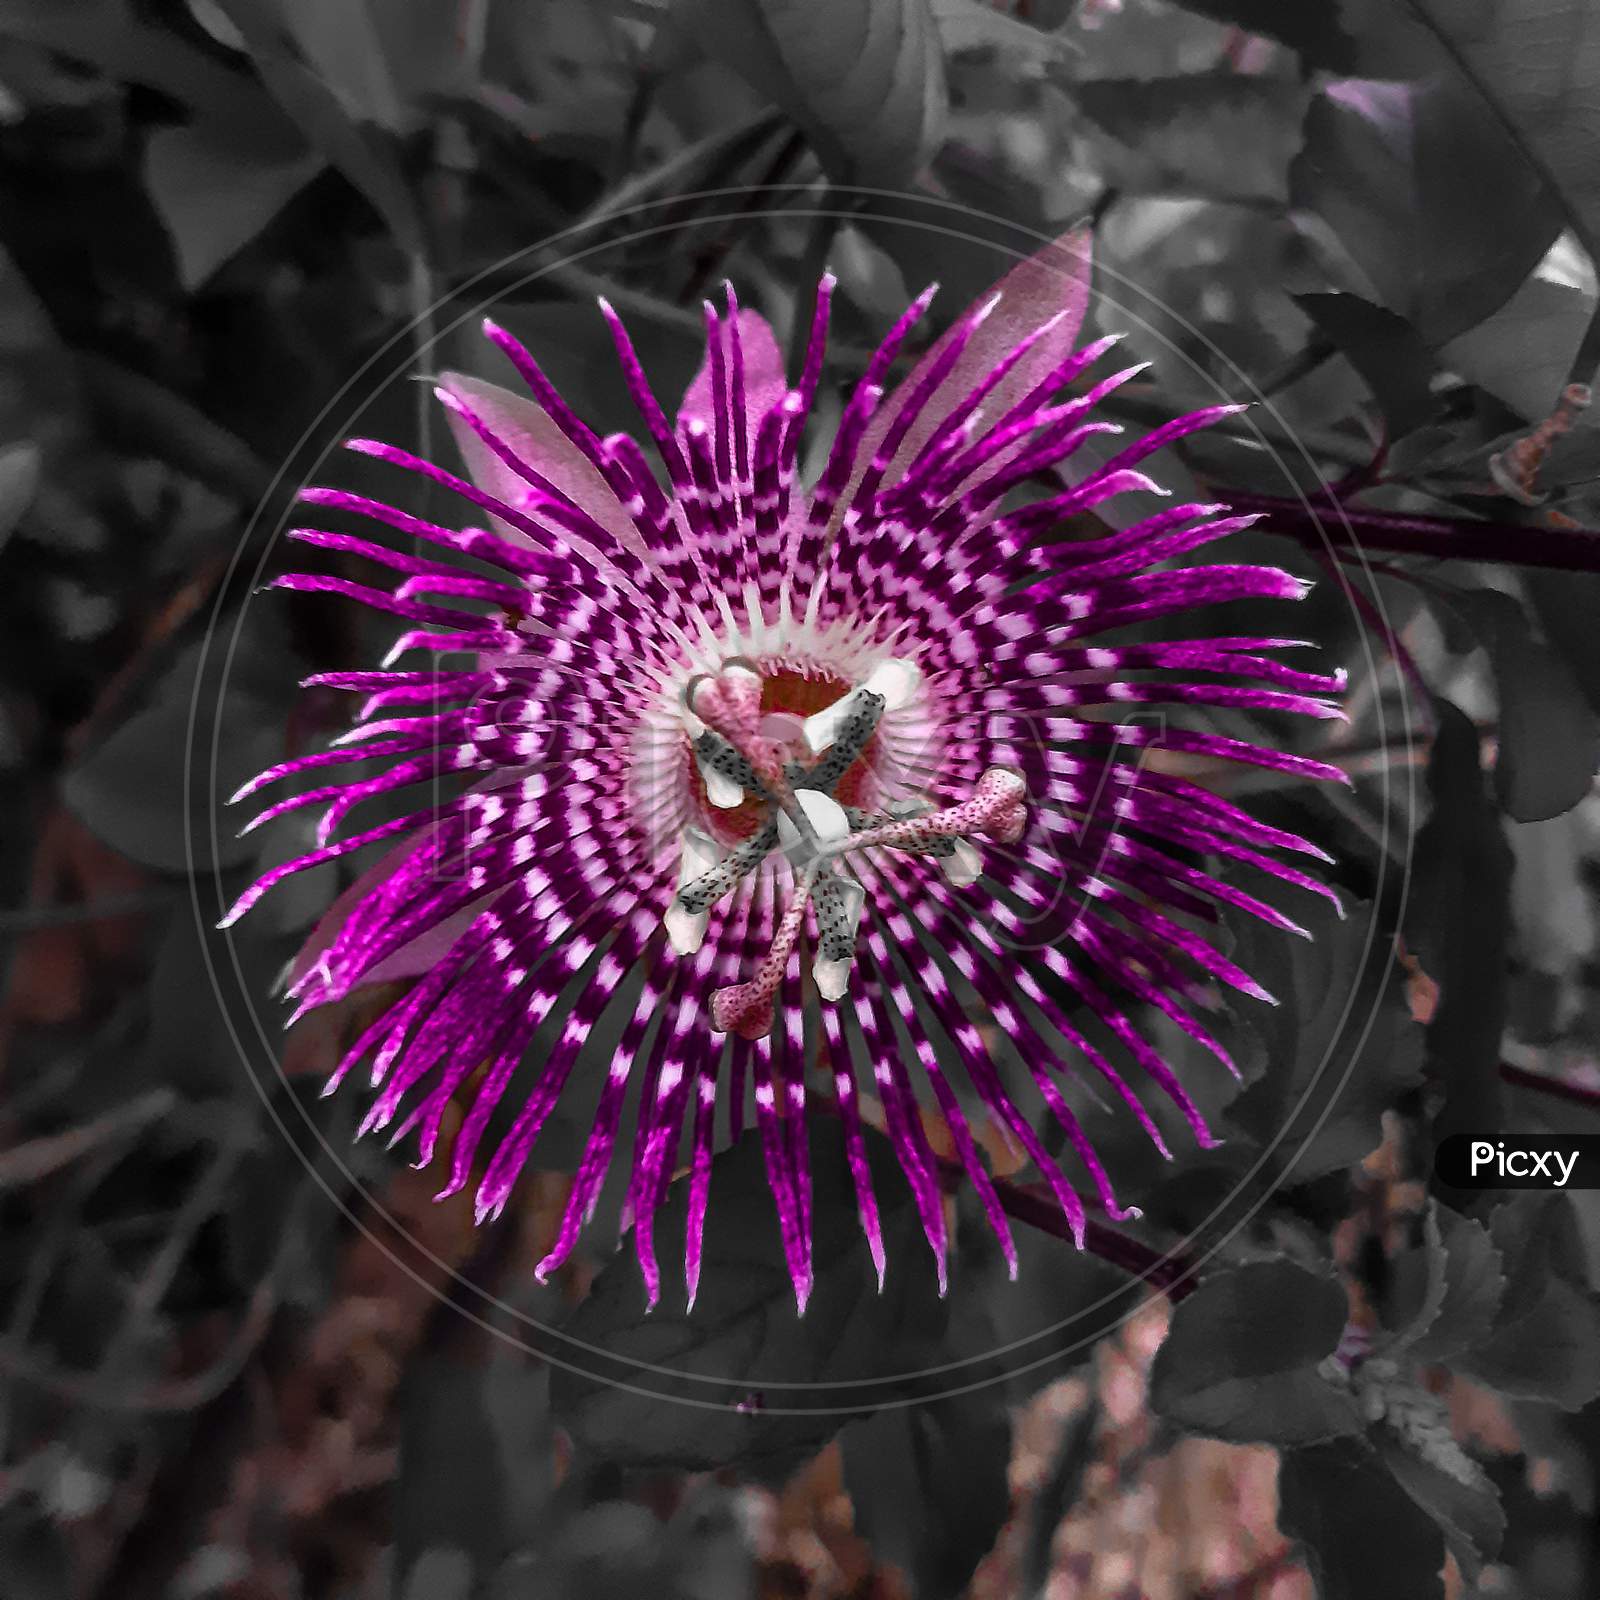 Balck & purple color flower